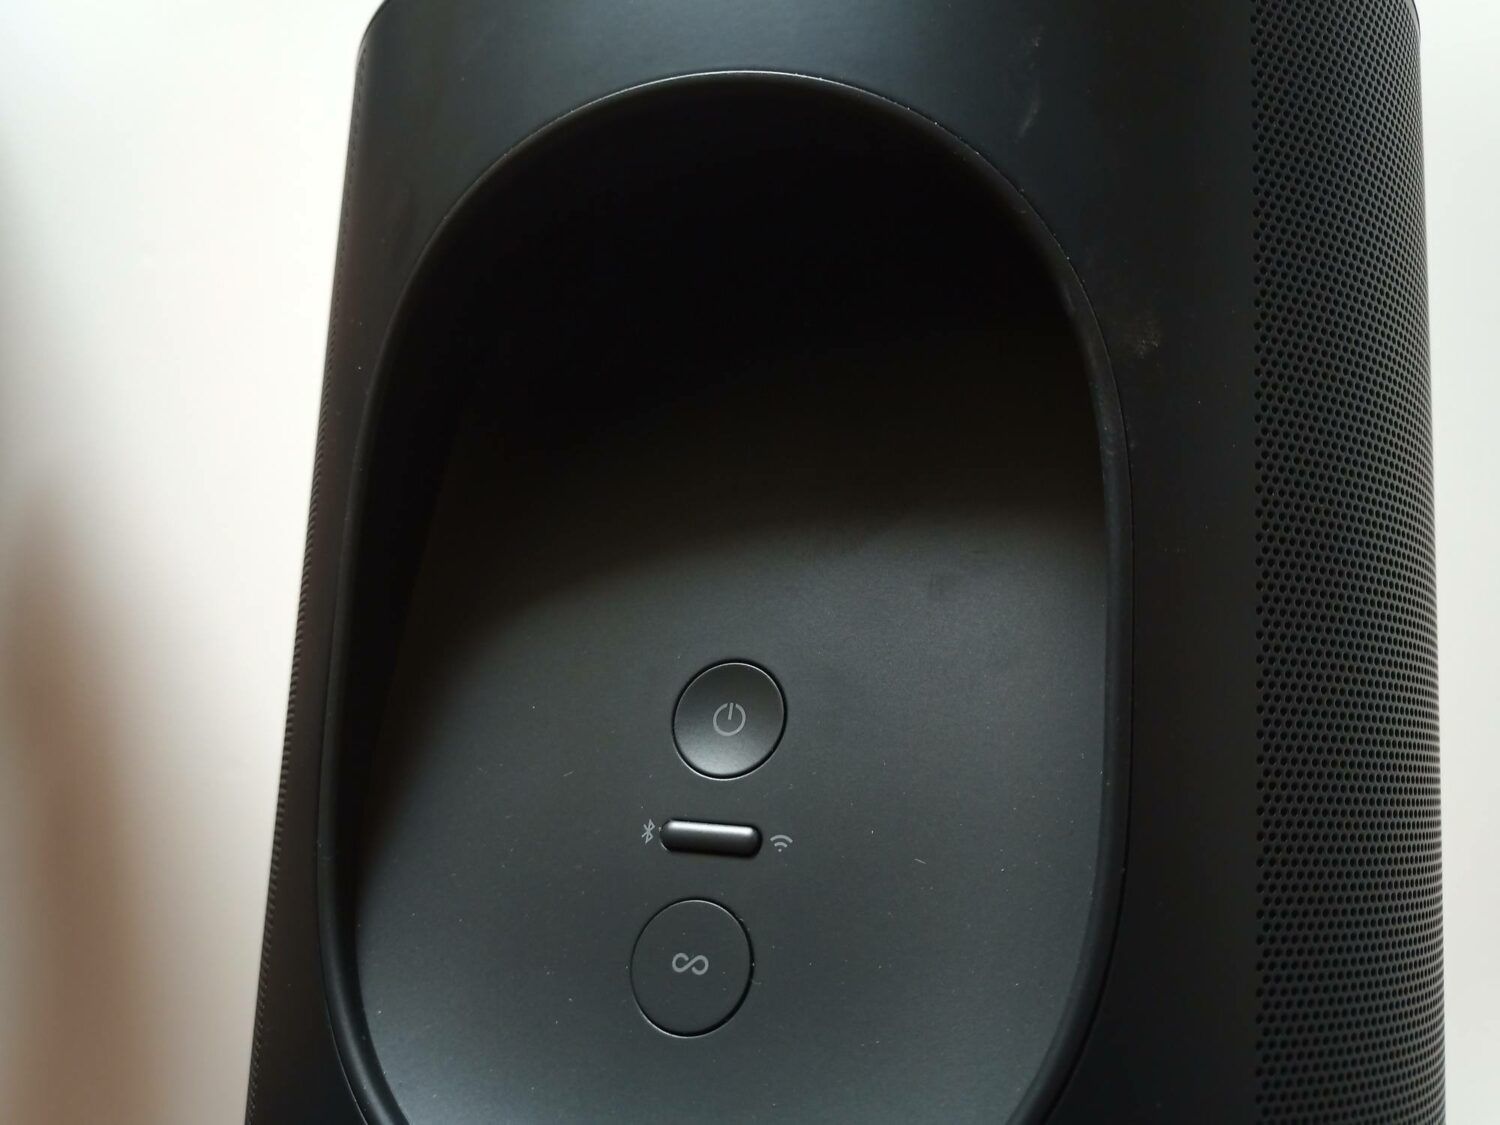 nous trouvons sur l'arrière de la Sonos Move les boutons de commande de mise en marche, de controle du wifi/Bluetooth ainsi que celui d'association.